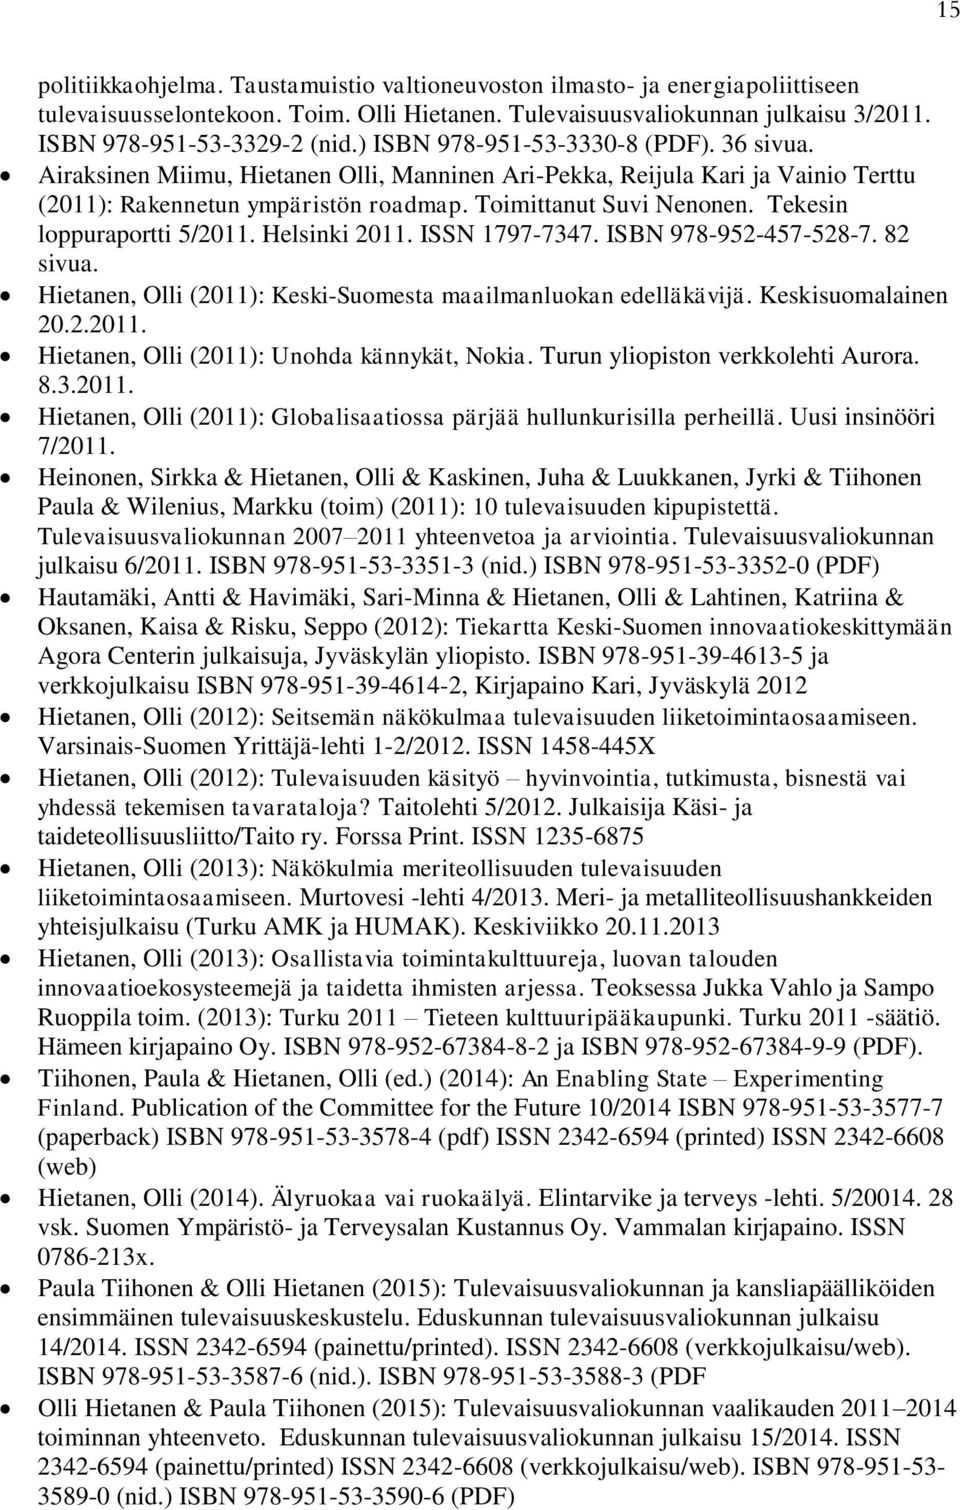 Tekesin loppuraportti 5/2011. Helsinki 2011. ISSN 1797-7347. ISBN 978-952-457-528-7. 82 sivua. Hietanen, Olli (2011): Keski-Suomesta maailmanluokan edelläkävijä. Keskisuomalainen 20.2.2011. Hietanen, Olli (2011): Unohda kännykät, Nokia.